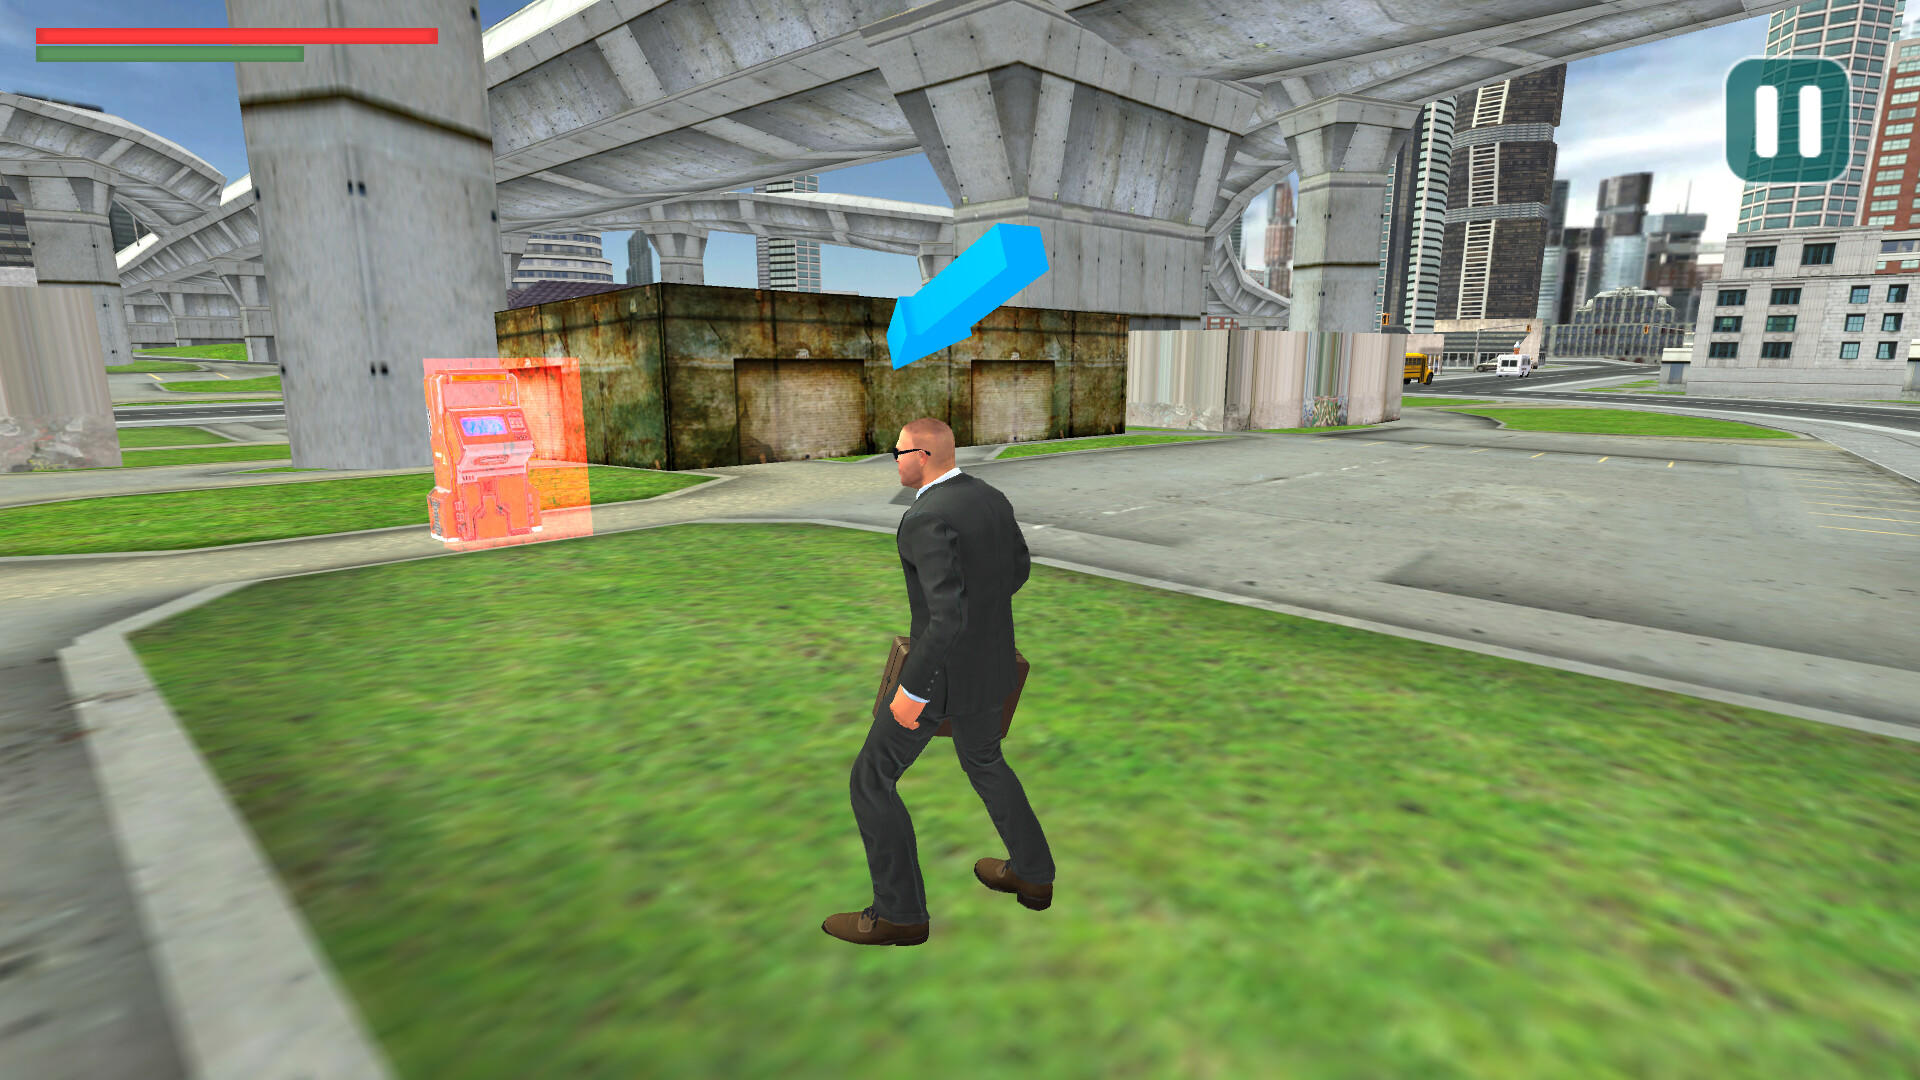 Money Transporter screenshot game